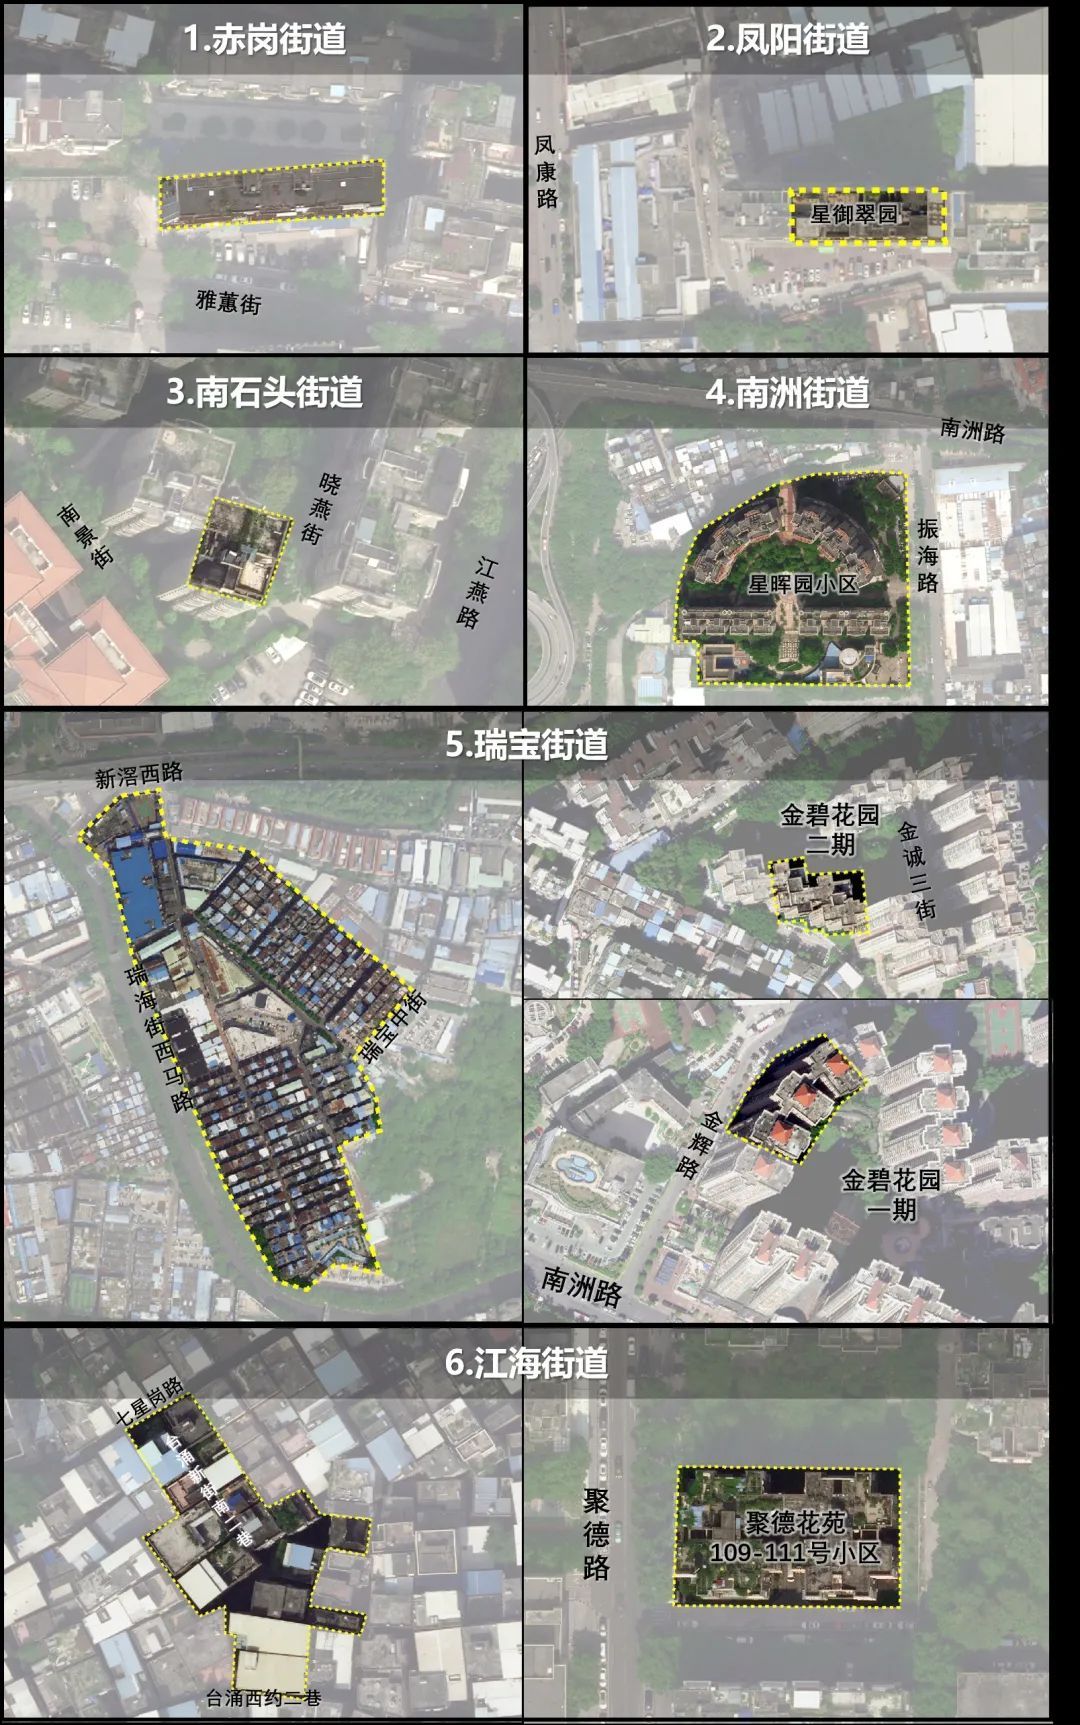 广州海珠区对赤岗街道、凤阳街道等部分区域实施临时管控管理